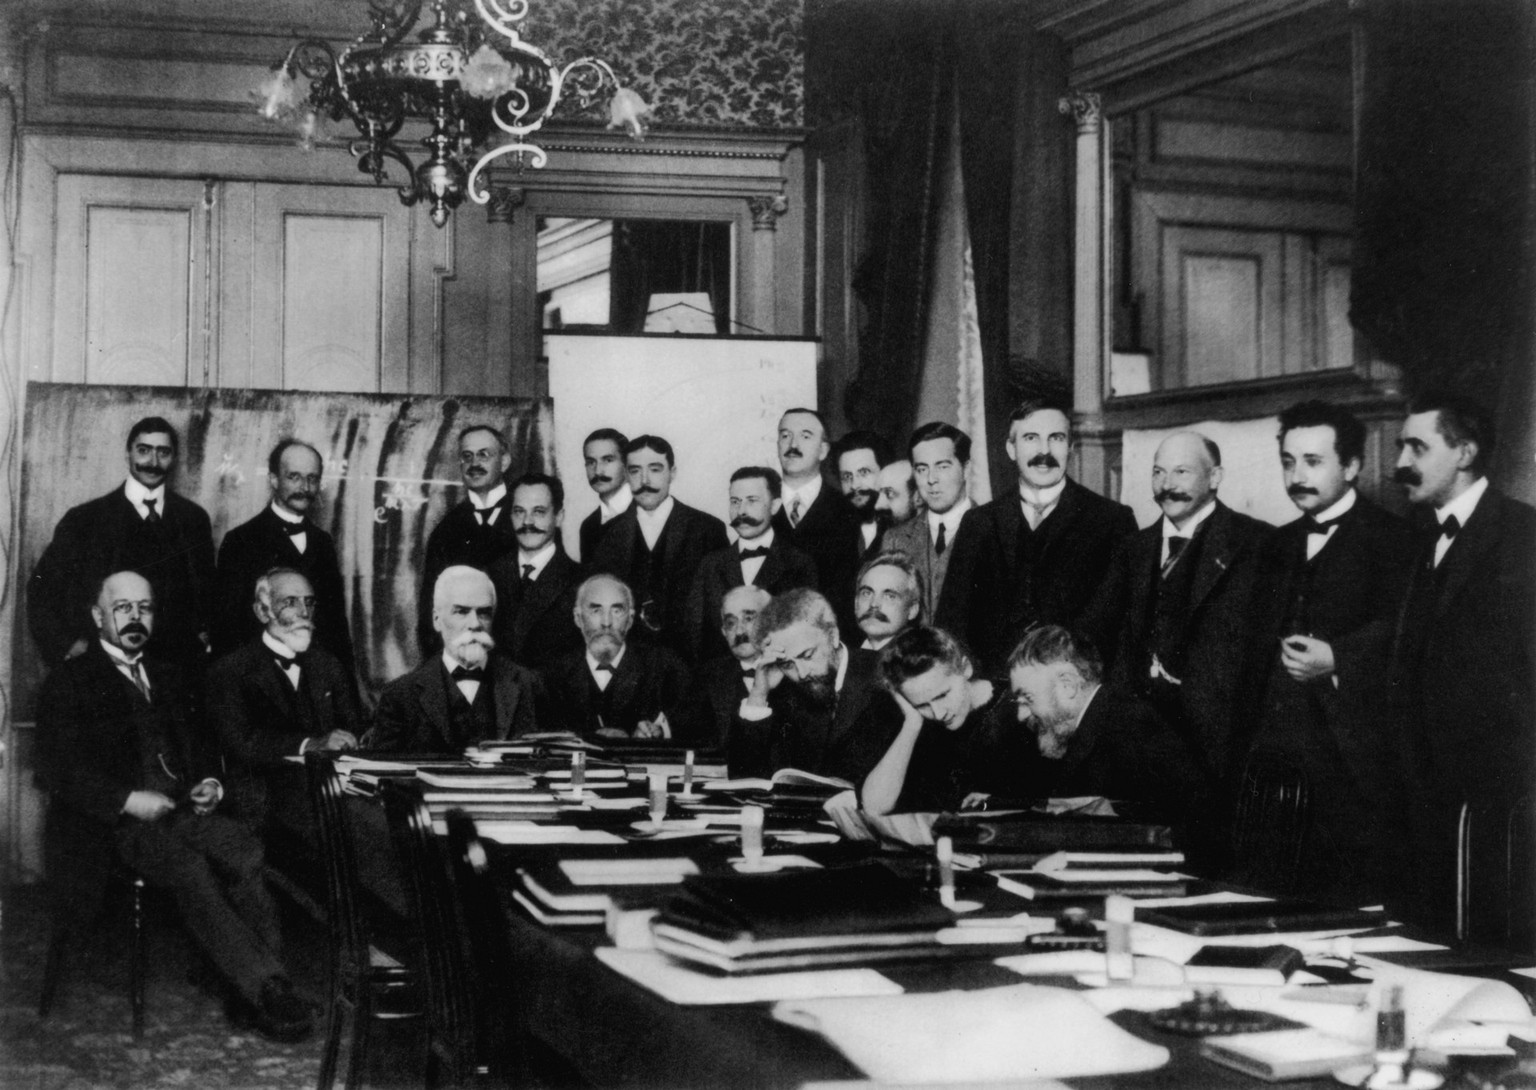 Marie Curie von Männern umgeben am Tisch sitzend während der ersten Solvay-Konferenz für Physik im Jahr 1911.